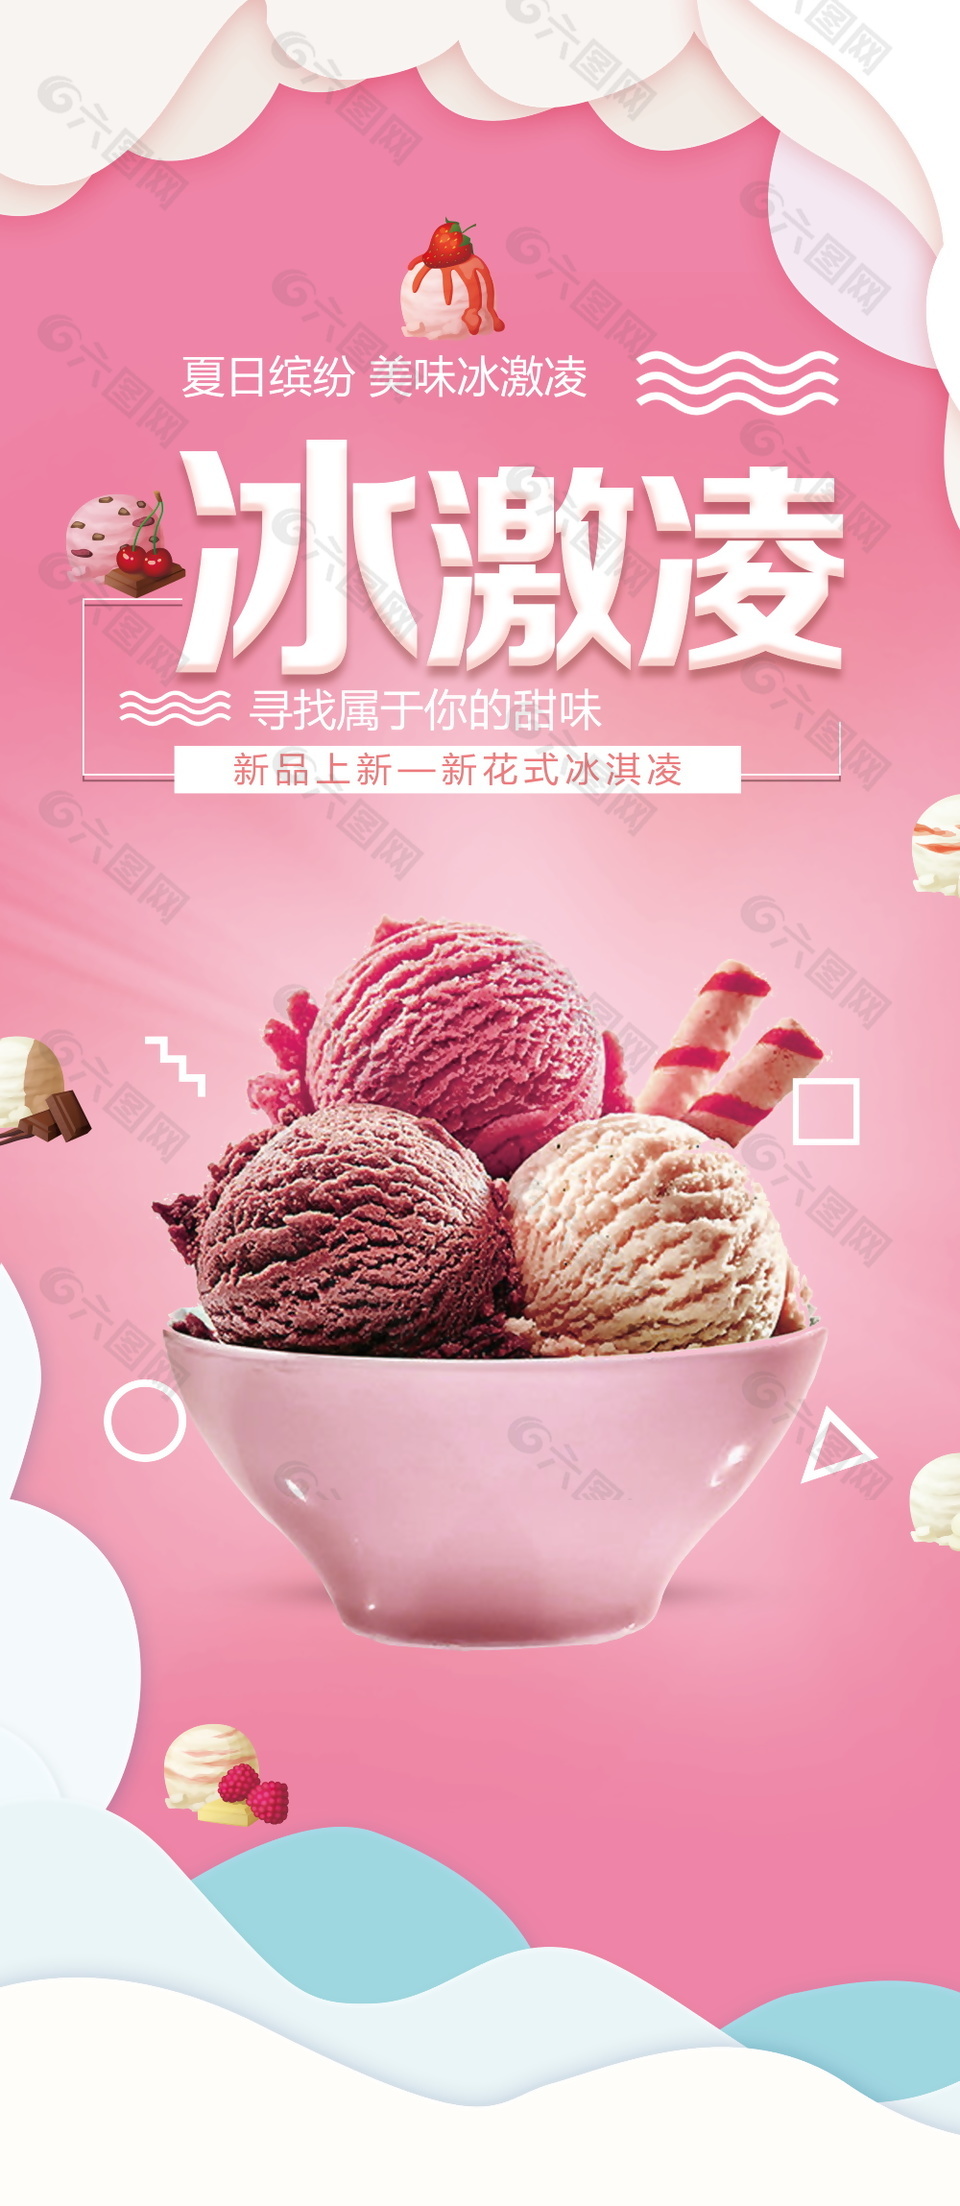 冰激凌甜点美食海报设计